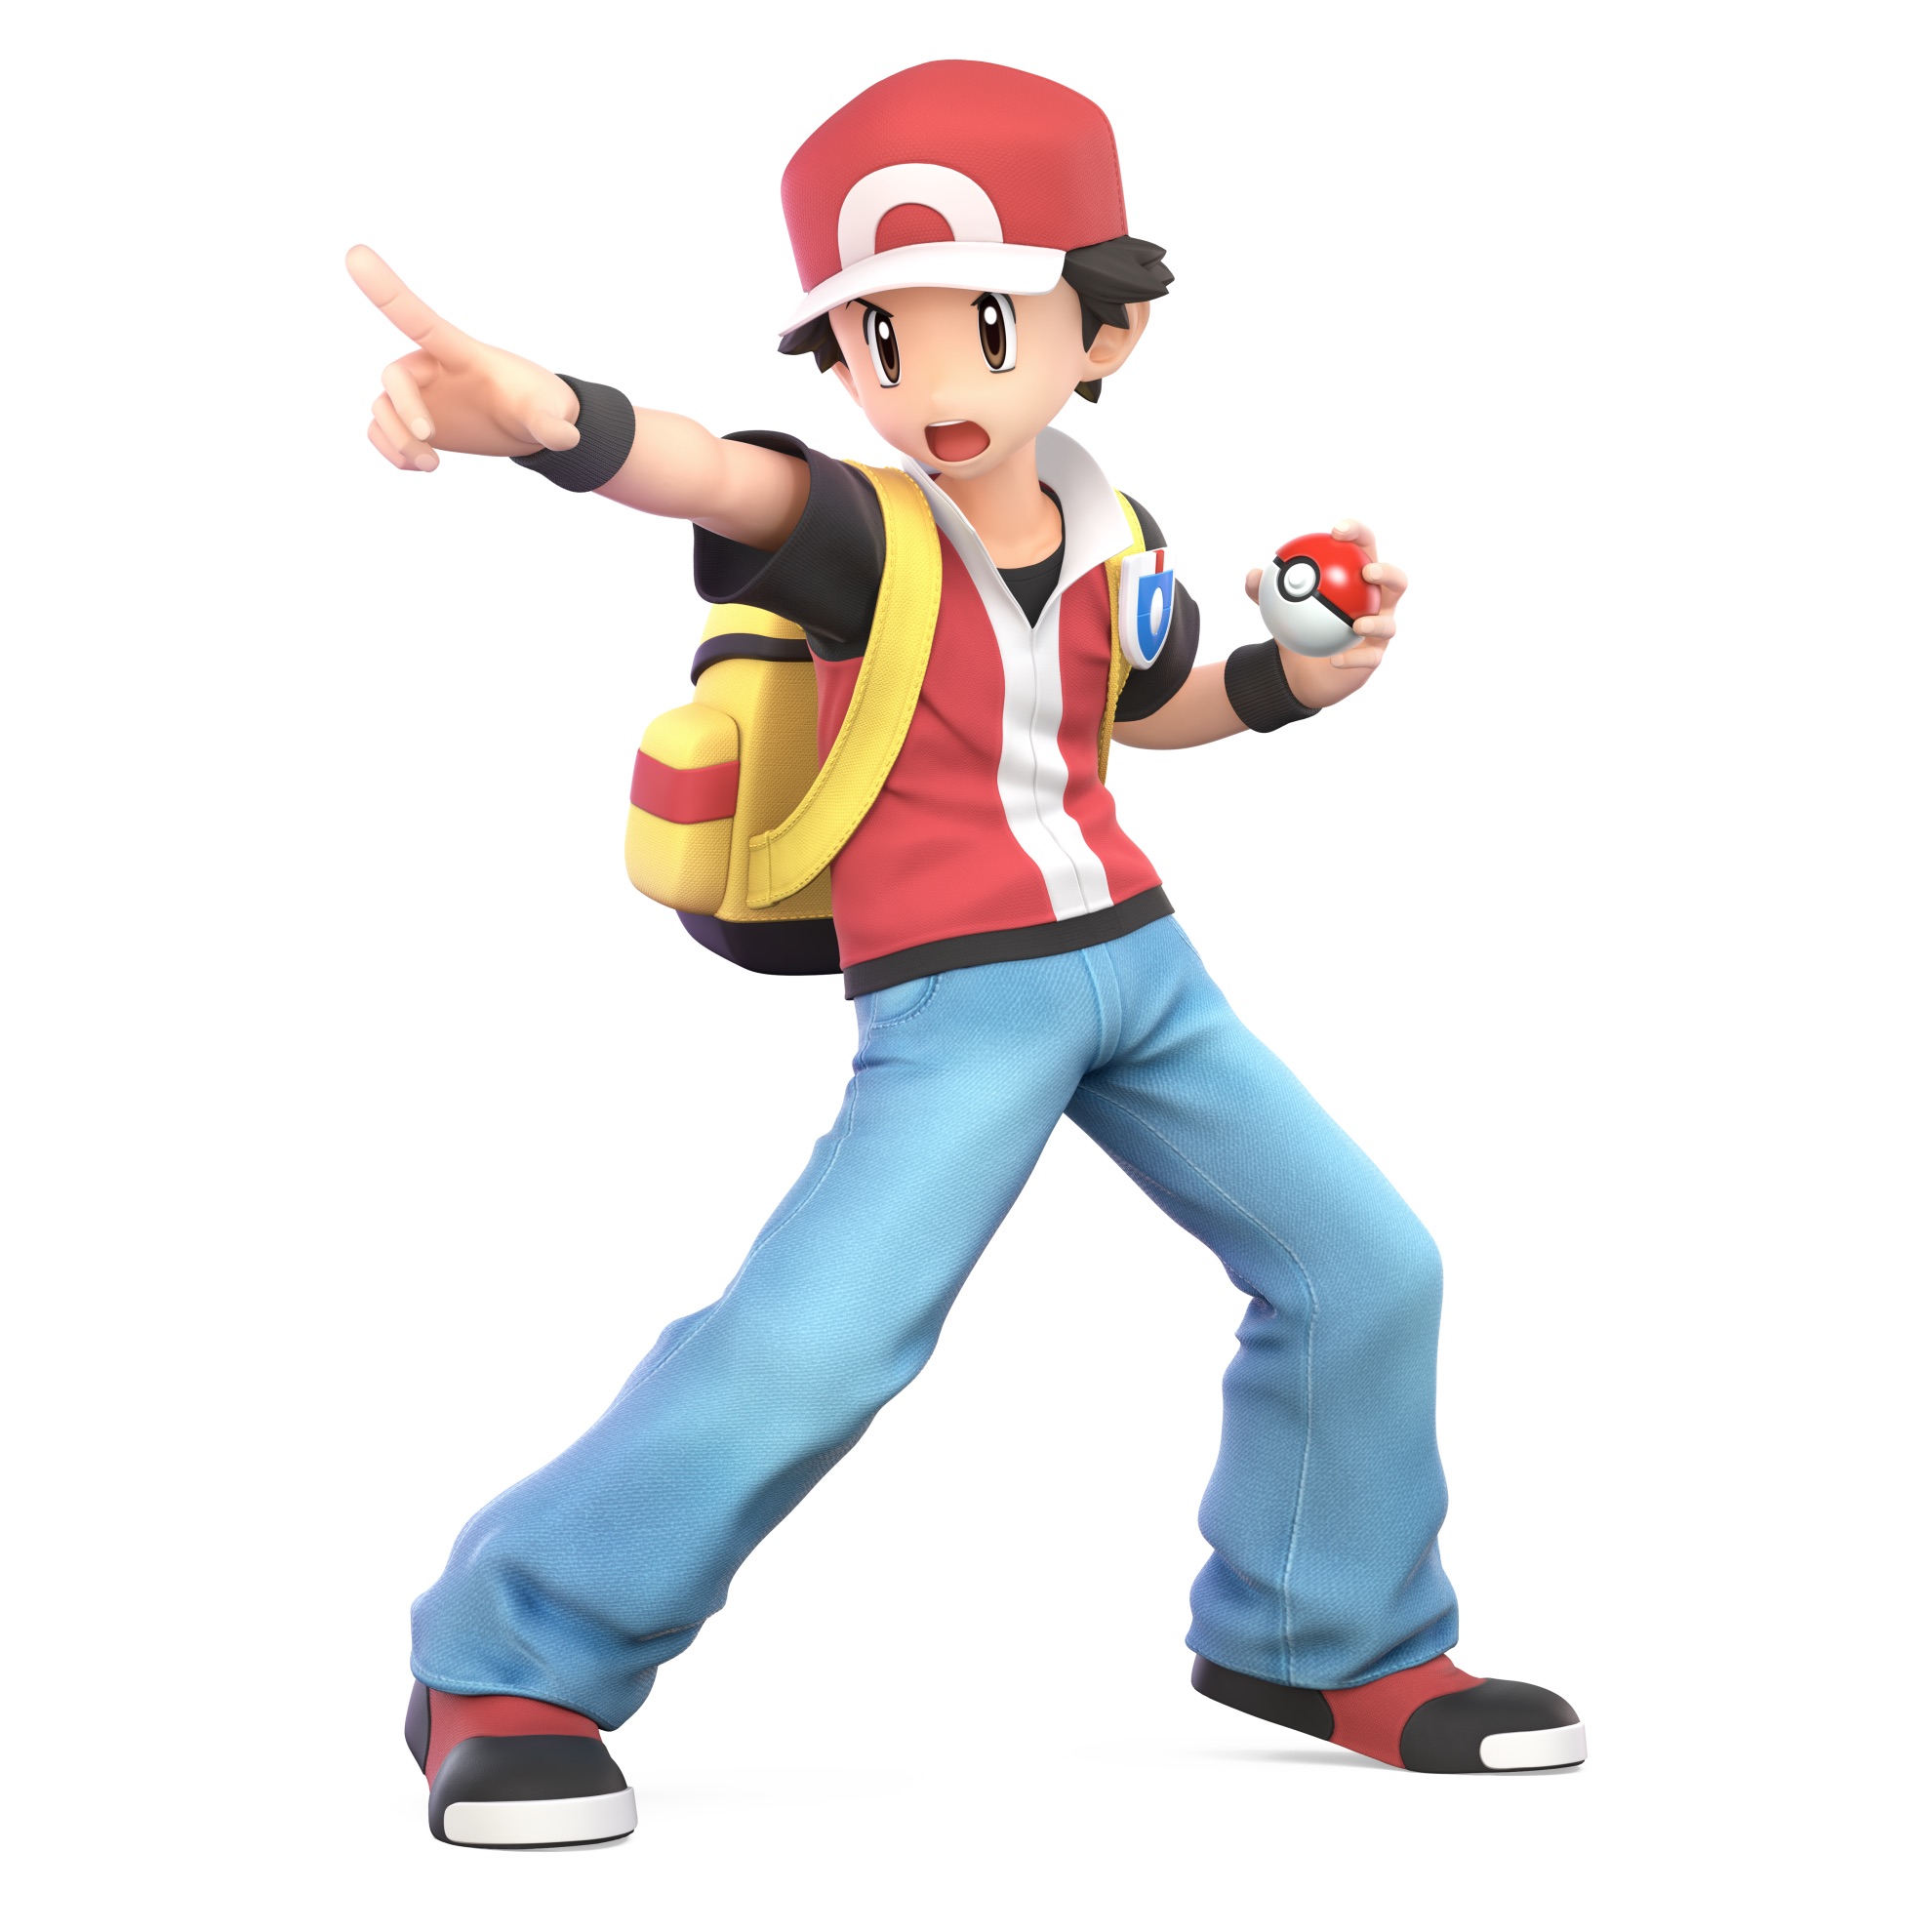 Pokémon Trainer Super Smash Bros. Ultimate Character Render